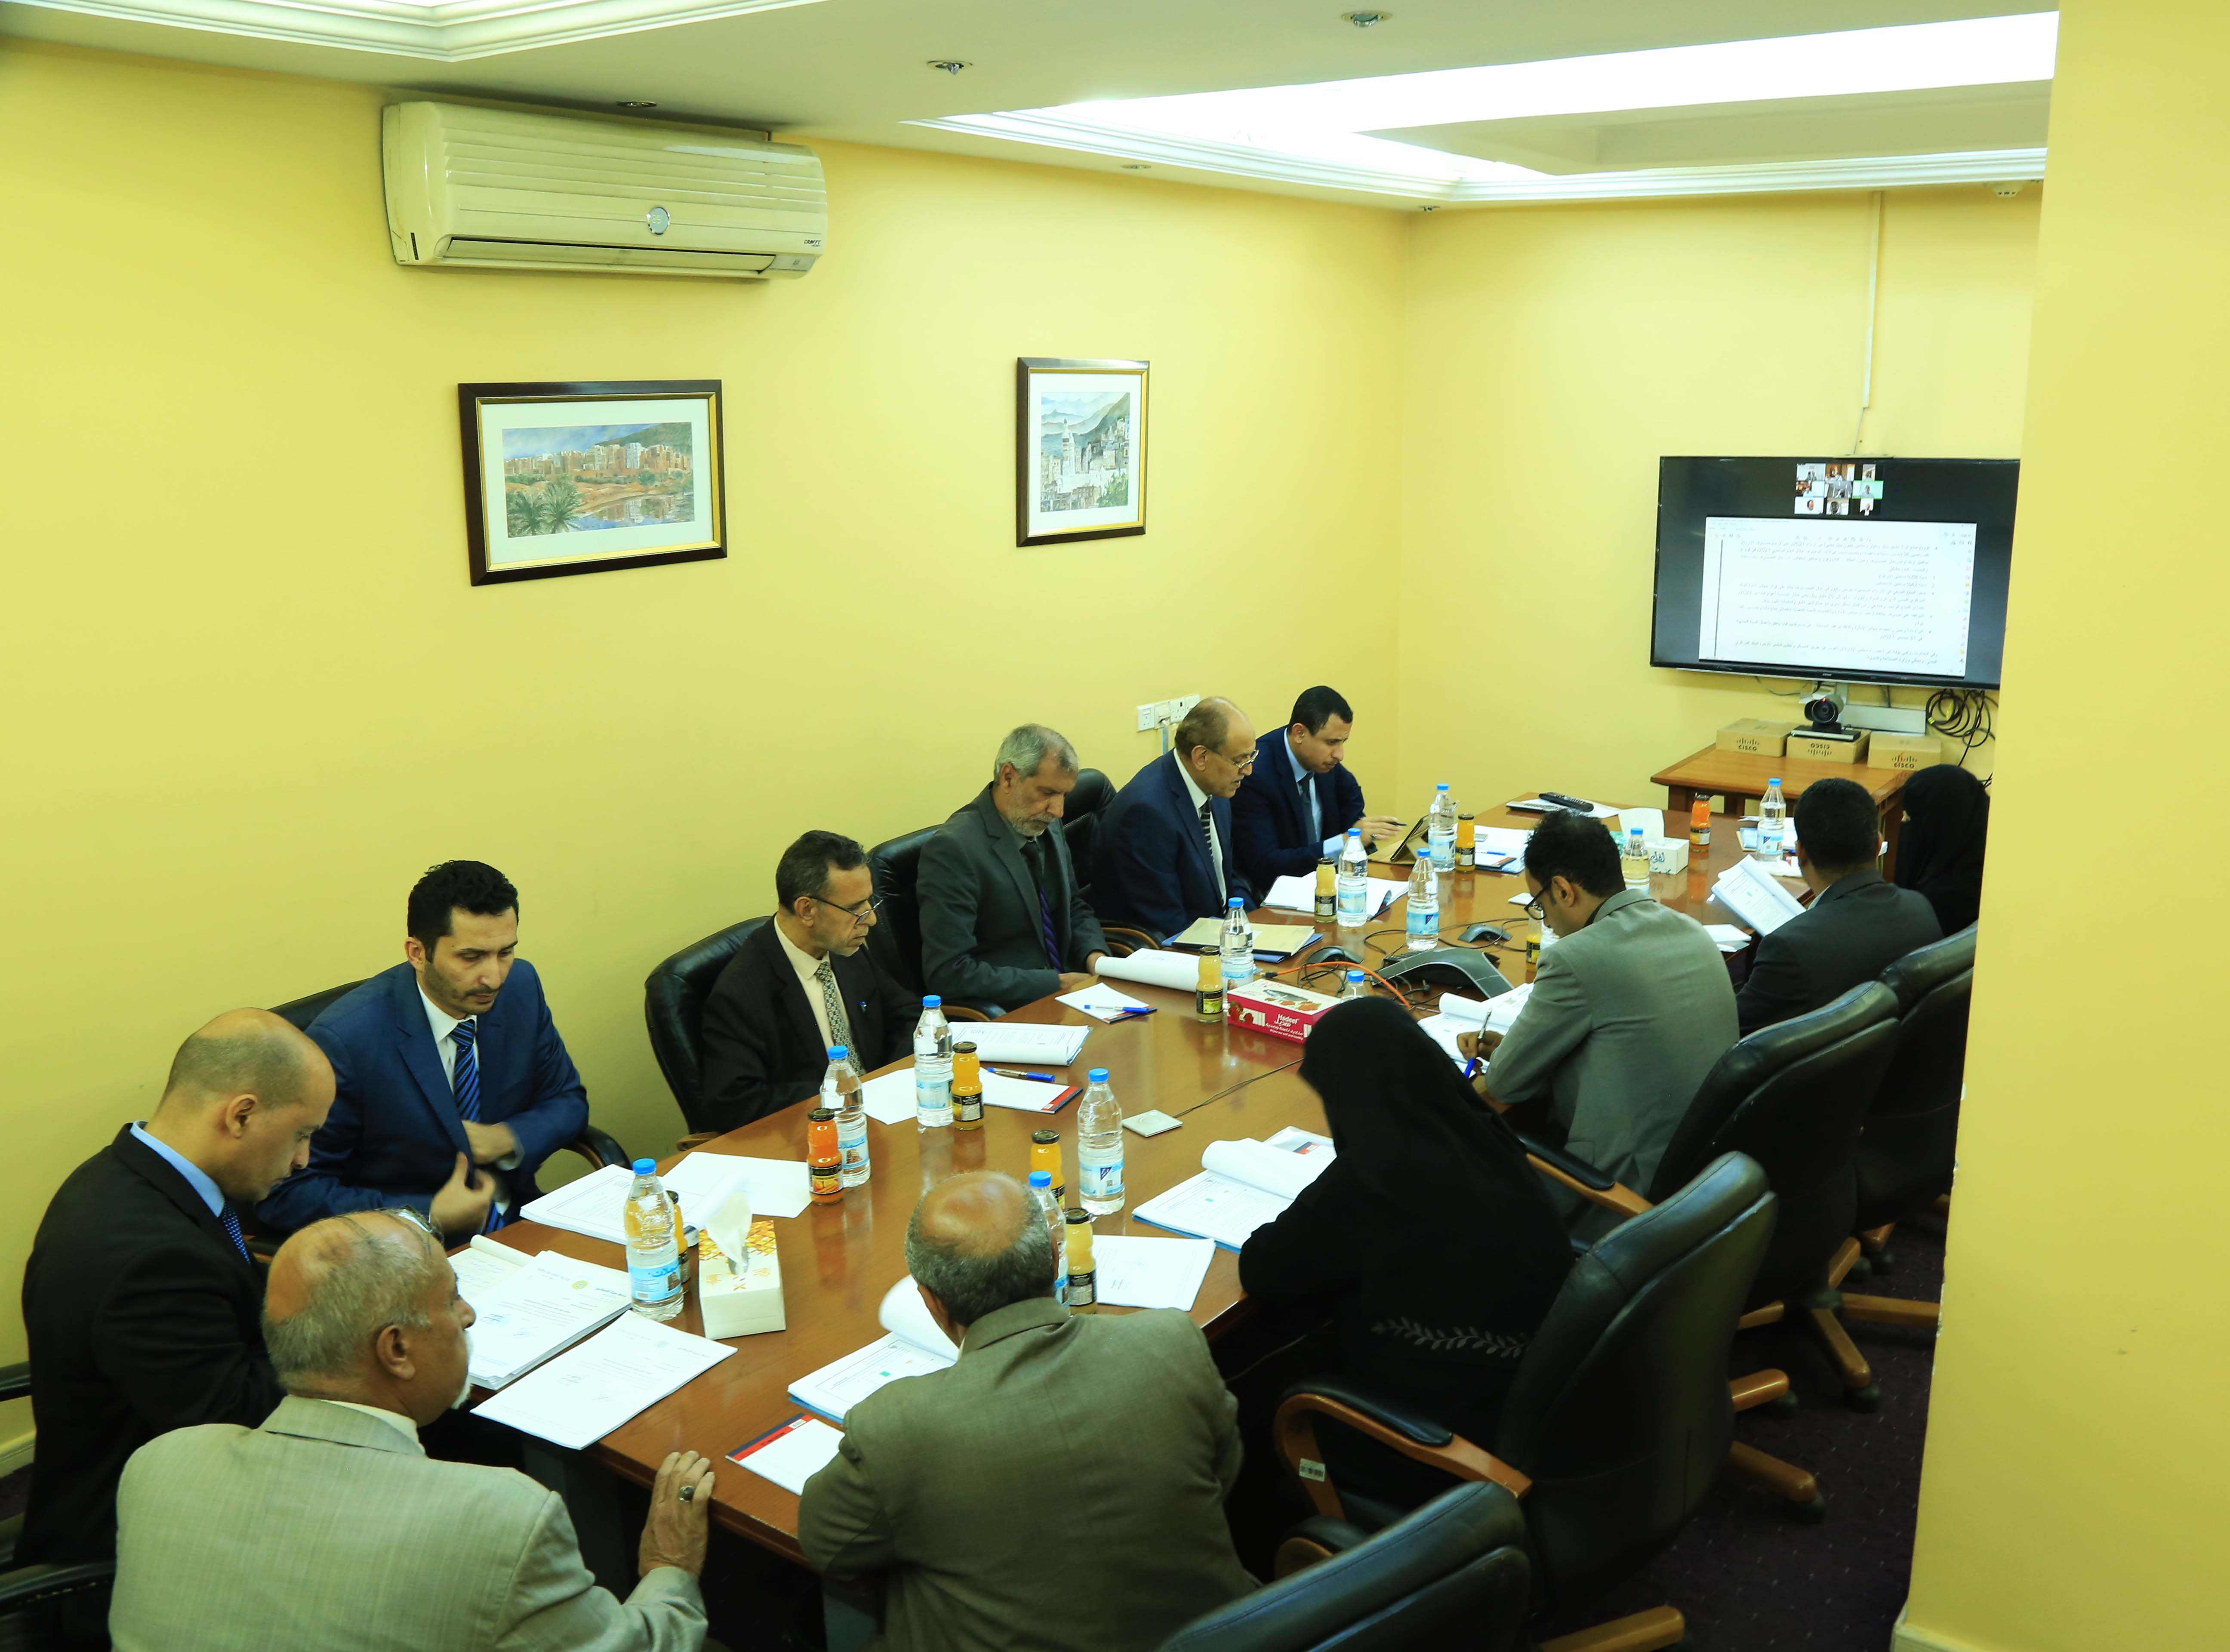 اجتماع الجمعية العامة العادية العشرون – مصرف اليمن البحرين الشامل